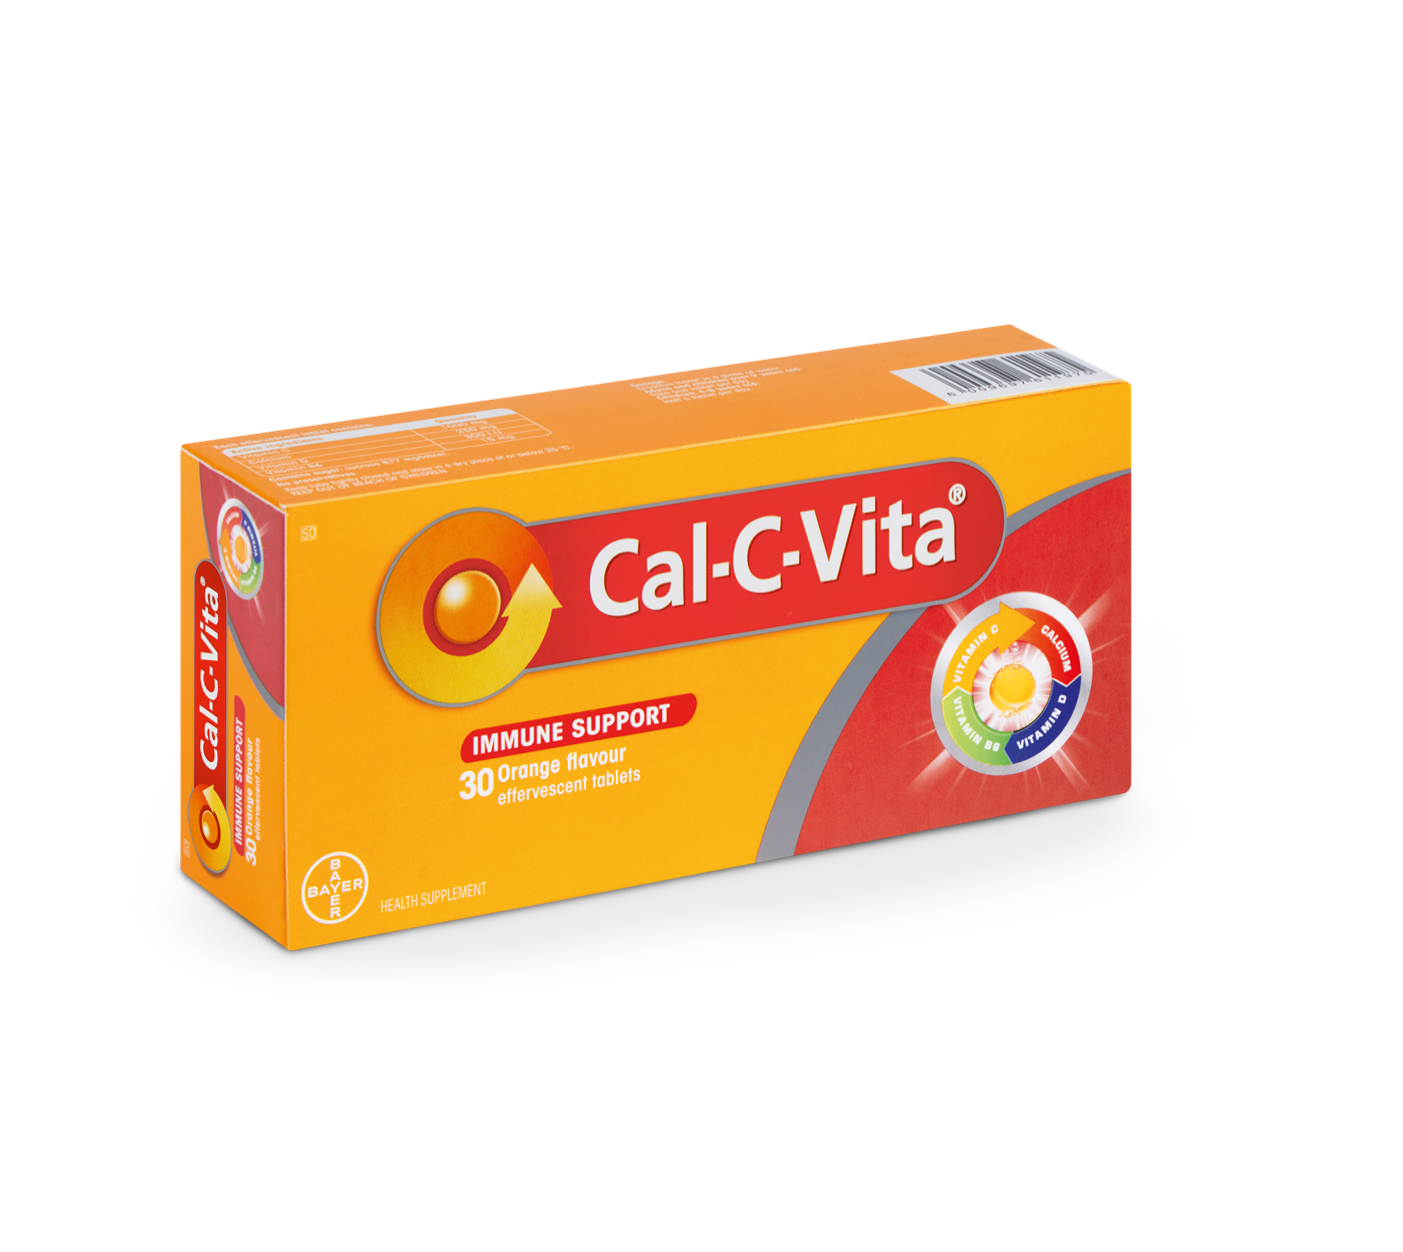 Cal-C-Vita®